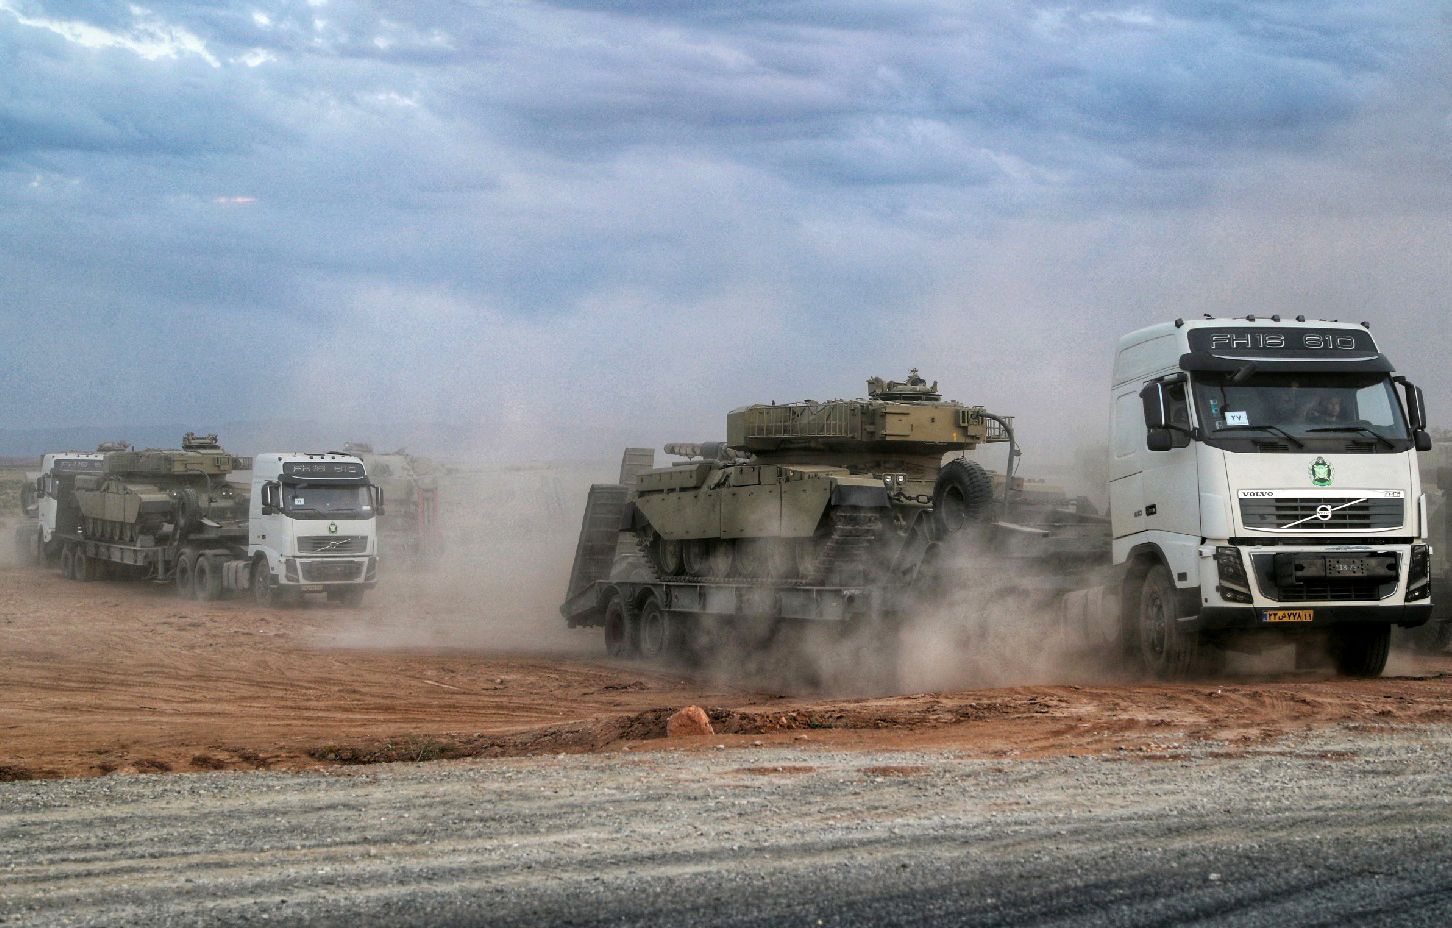 دبابة خلال المناورات العسكرية بالقرب من الحدود الإيرانية الأذربيجانية - 1 أكتوبر 2021 - AFP